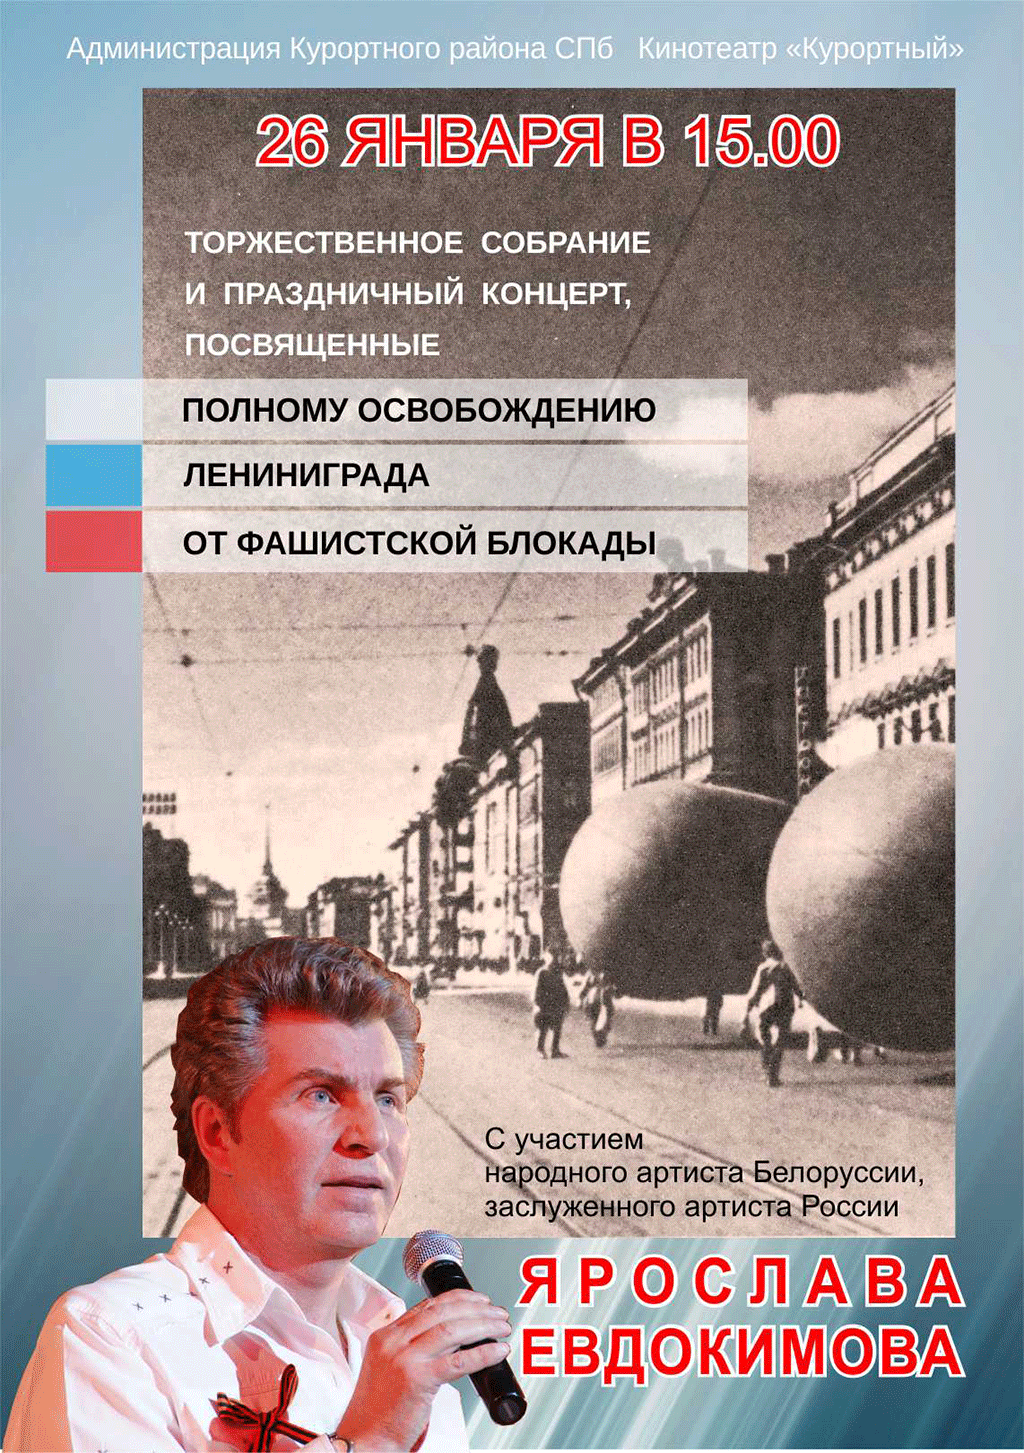 Торжественное собрание и праздничный концерт, посвященные освобождению Ленинграда